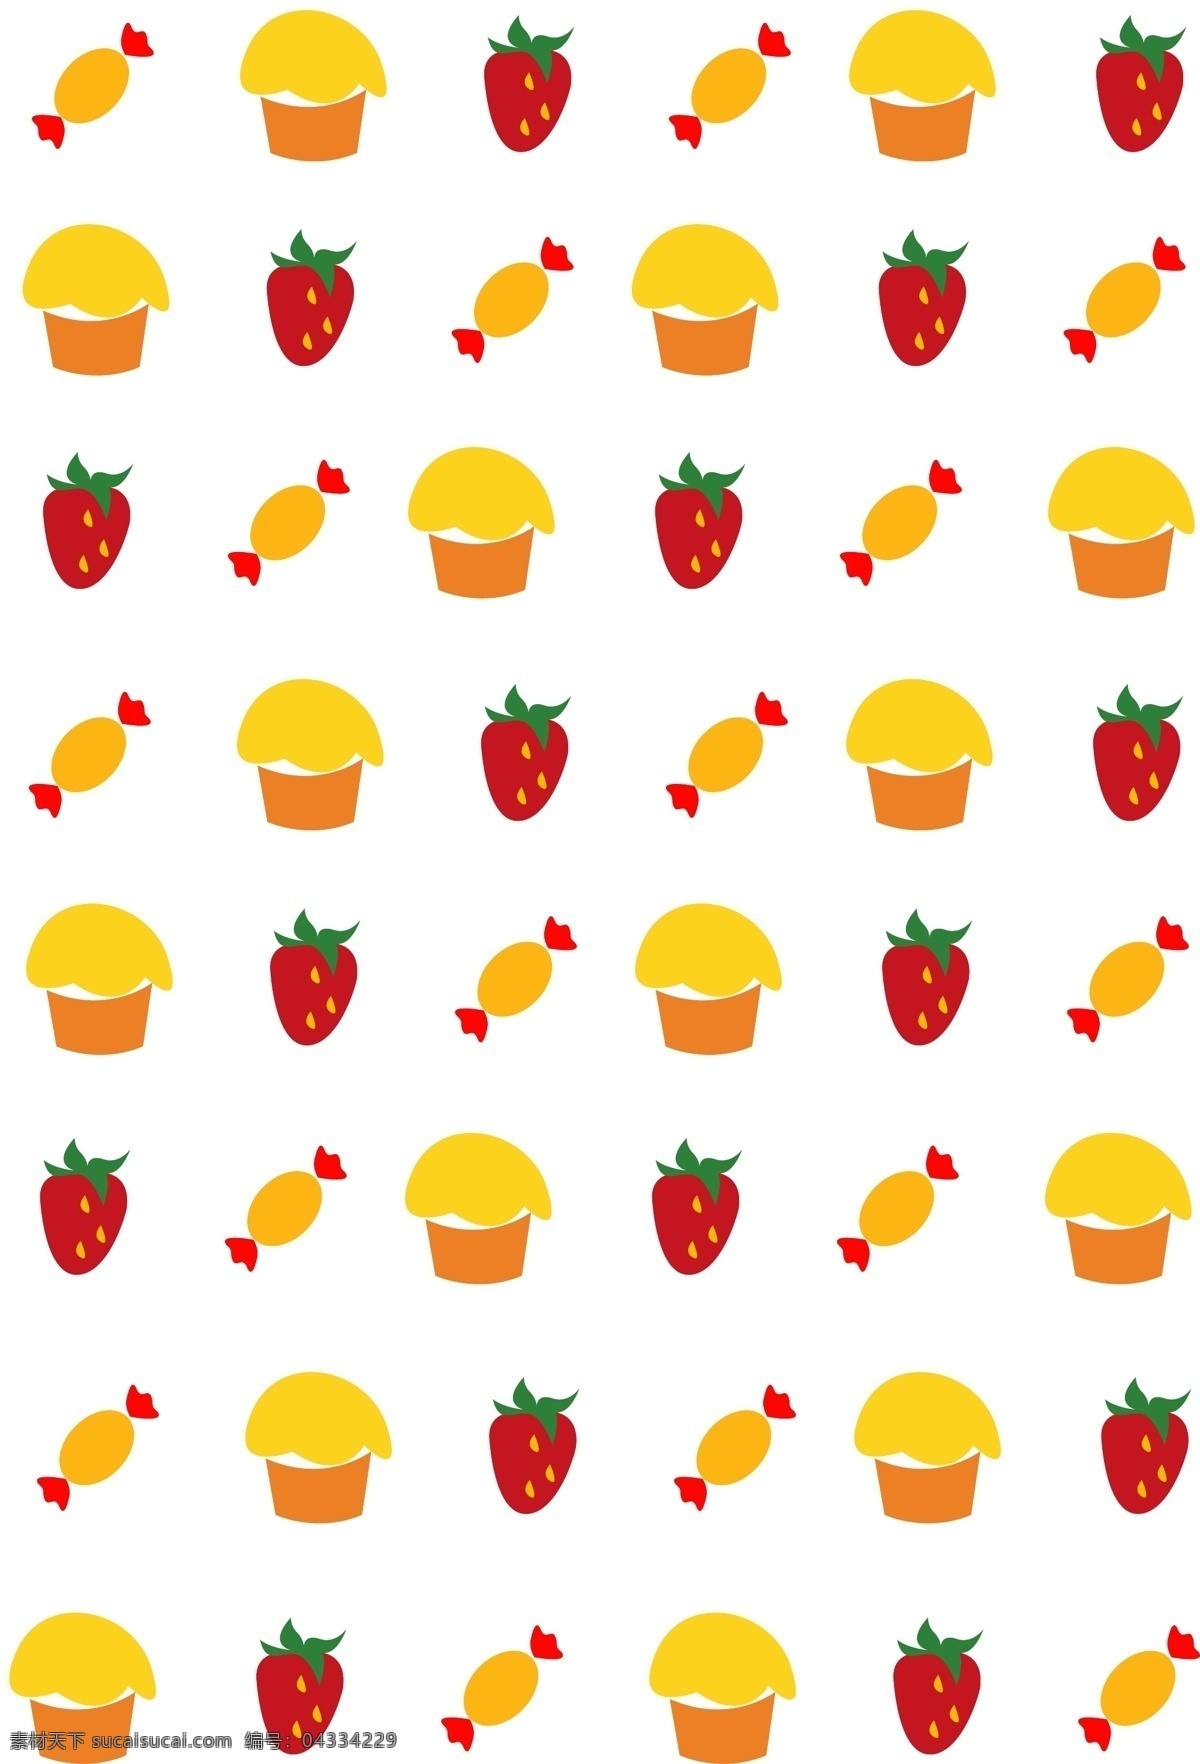 美味 食物 底纹 插画 美味的蛋糕 美味的草莓 蛋糕底纹 草莓底纹 红色草莓 黄色蛋糕 食物底纹插画 黄色糖果